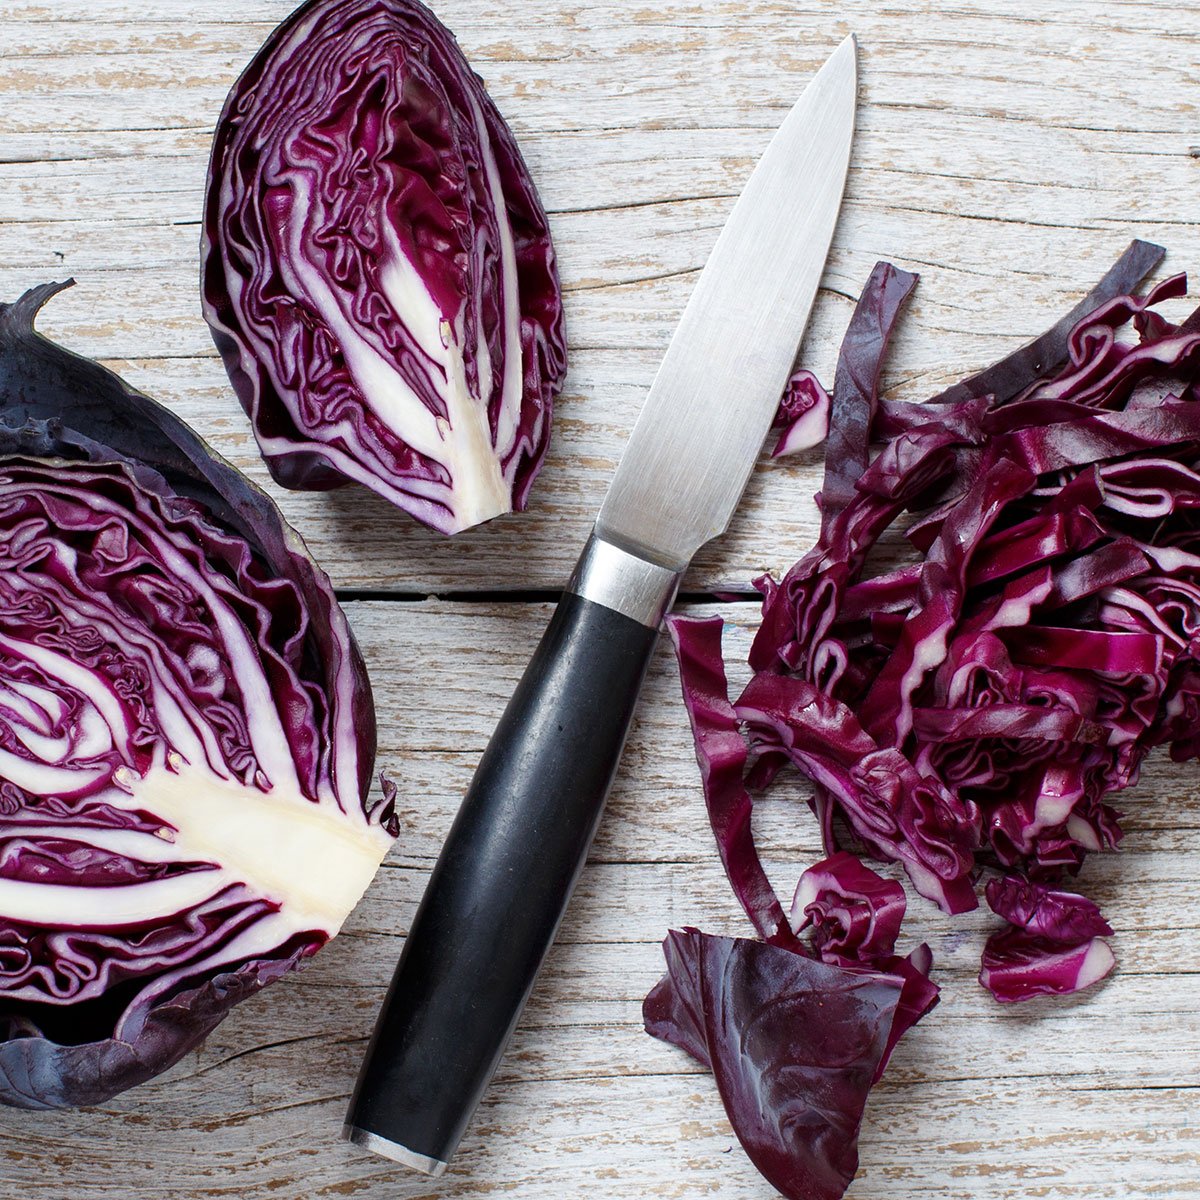 13 jenis pisau dapur beserta fungsinya pairing knife